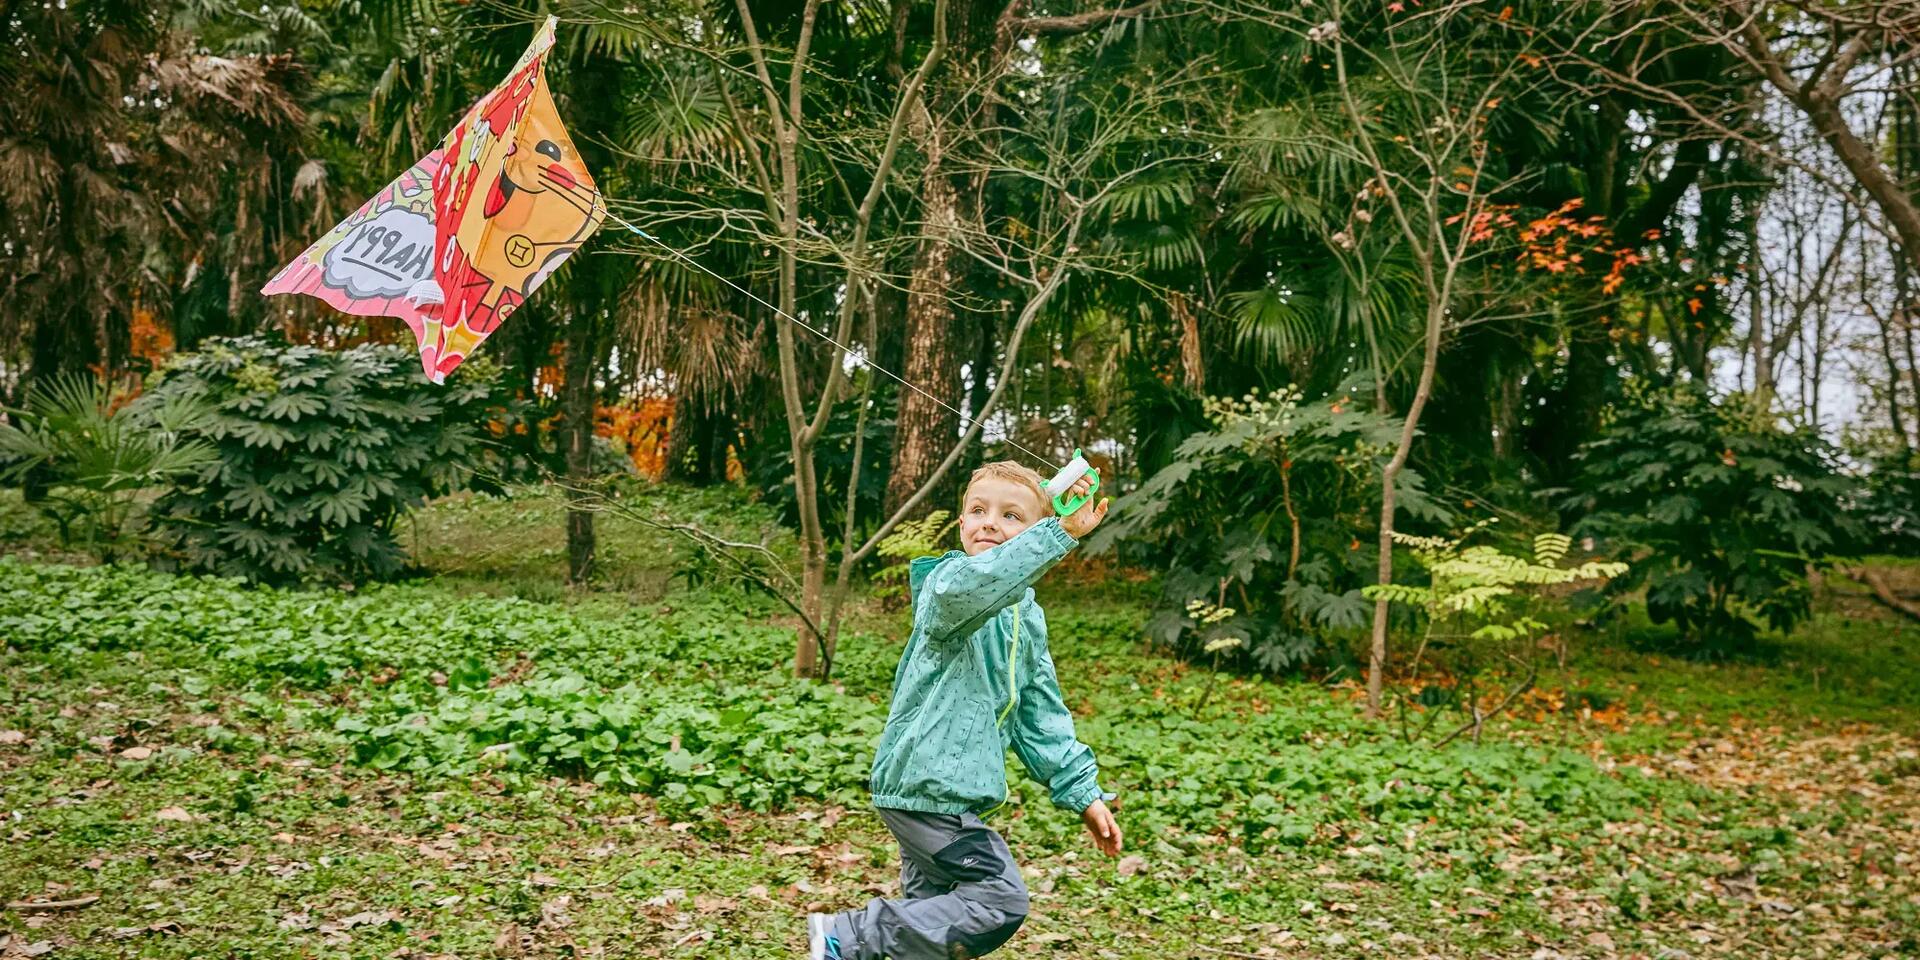 Chłopiec puszczający latawiec w ogrodzie